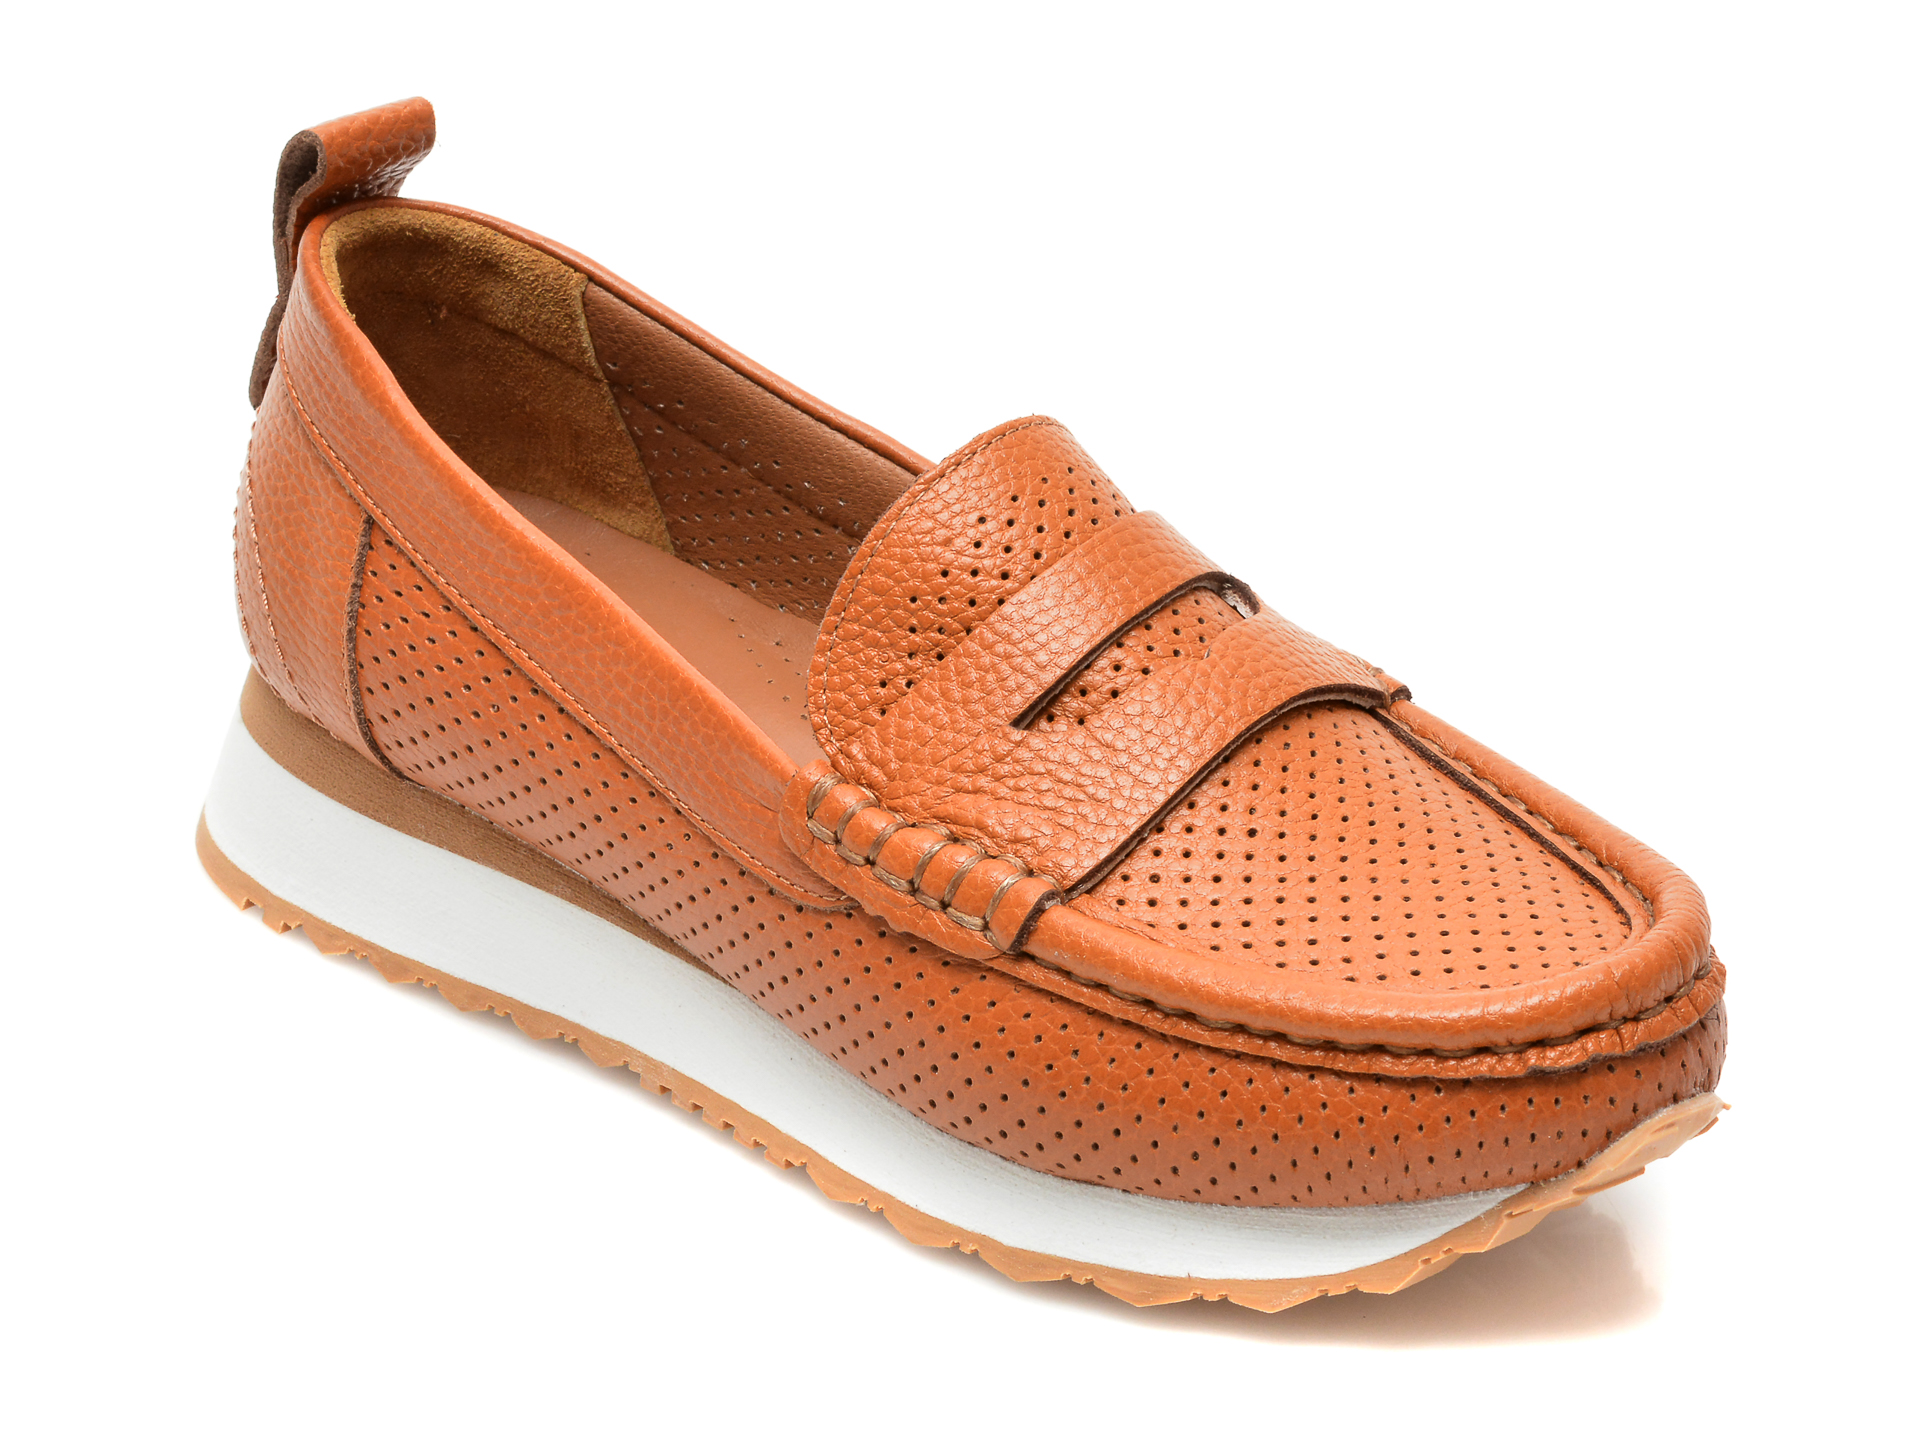 Pantofi FLAVIA PASSINI maro, 8911907, din piele naturala Flavia Passini